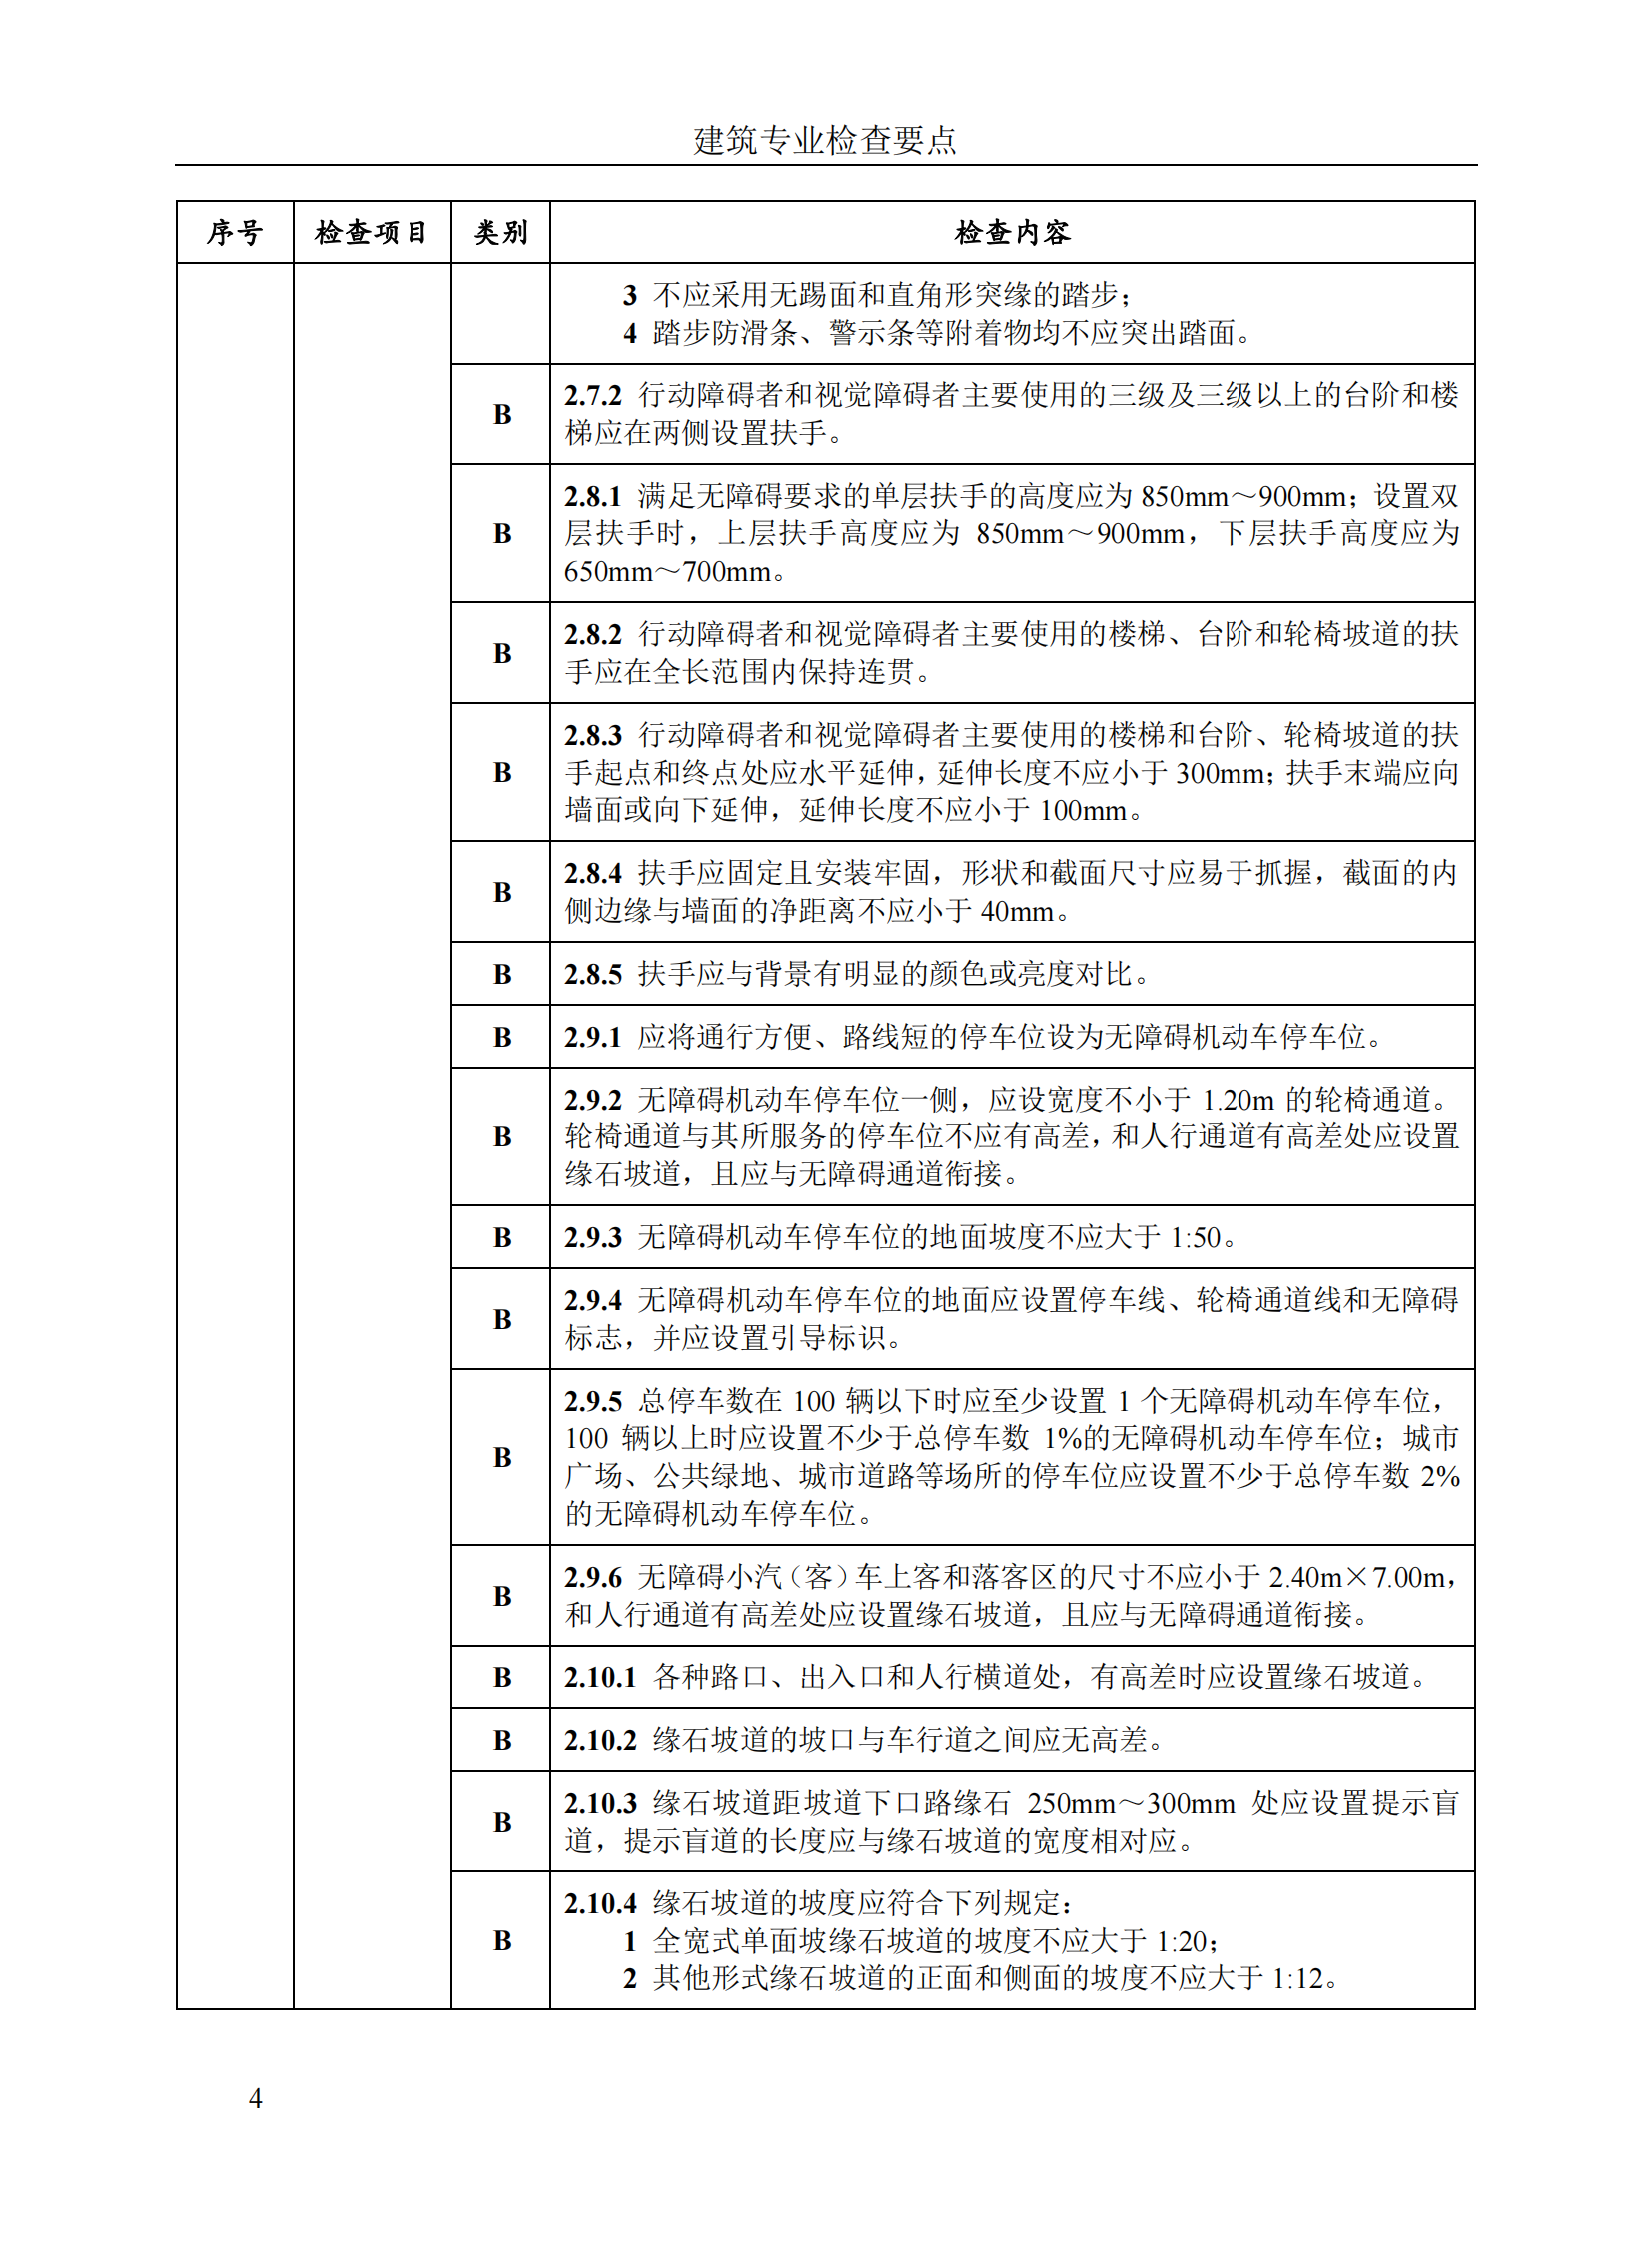 北京市房屋建筑工程施工图事后检查要点（上下册）插图(10)